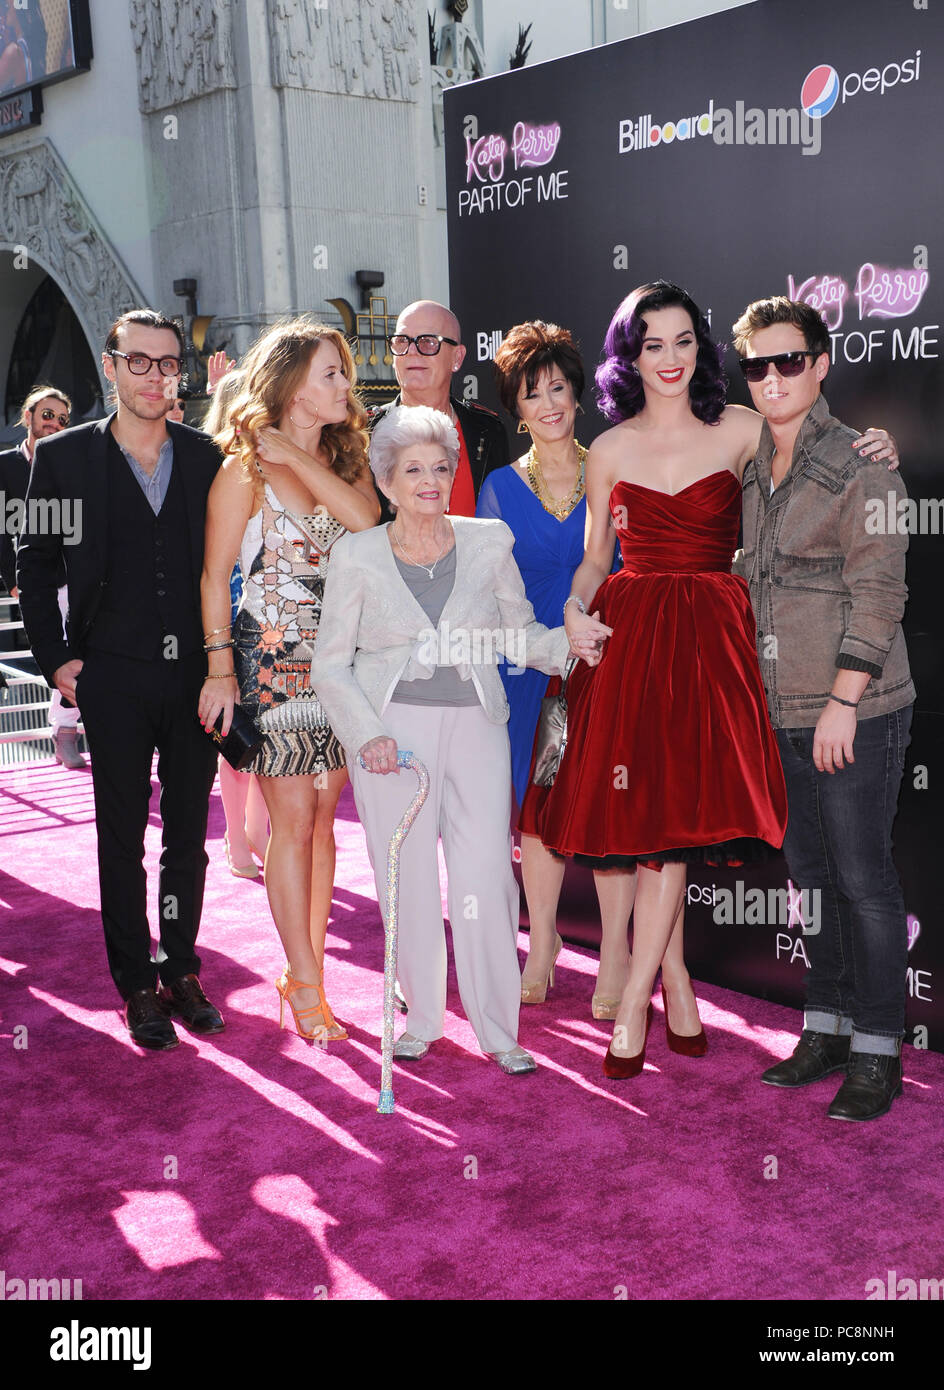 træt af Hubert Hudson Do Katy Perry und Familie an Katy Perry Teil Von Mir Premiere auf der Chinese  Theatre in Los Angeles. Katy Perry und ihre Familie 08 - - - - - - - - - -  - - -